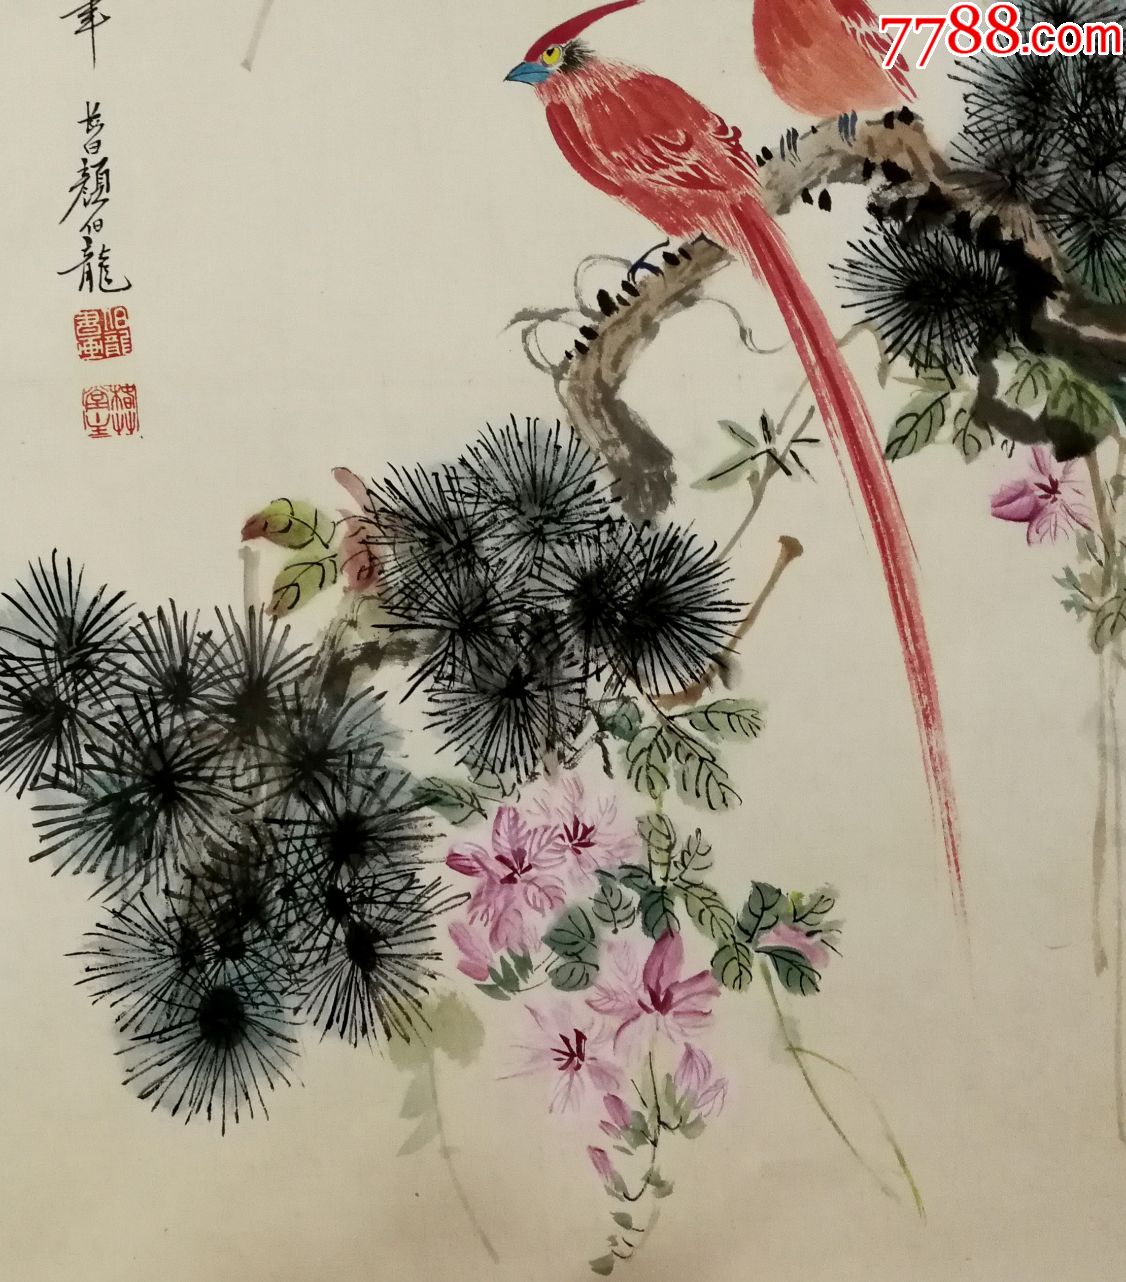 民国时期京津画派著名的花鸟画家【颜伯龙】松寿延年图